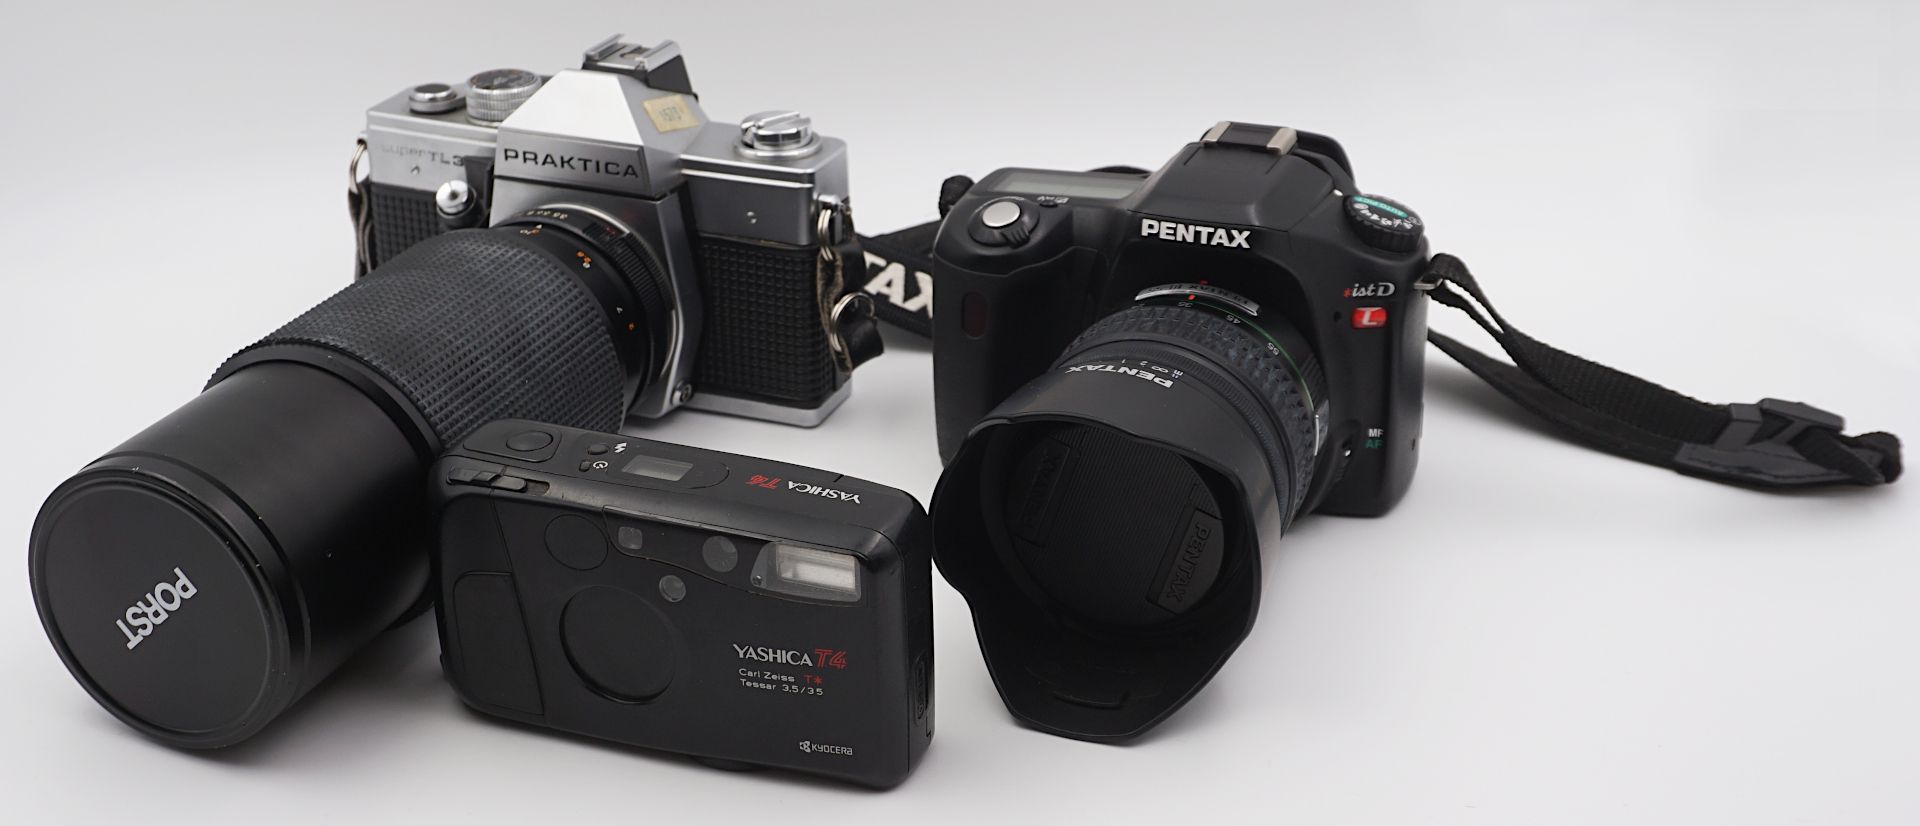 1 Konv. Fotoapparate PRAKTICA "Super TL3", NIKON "F60", PENTAX "istD", MINOLTA "Dynax 3xi"